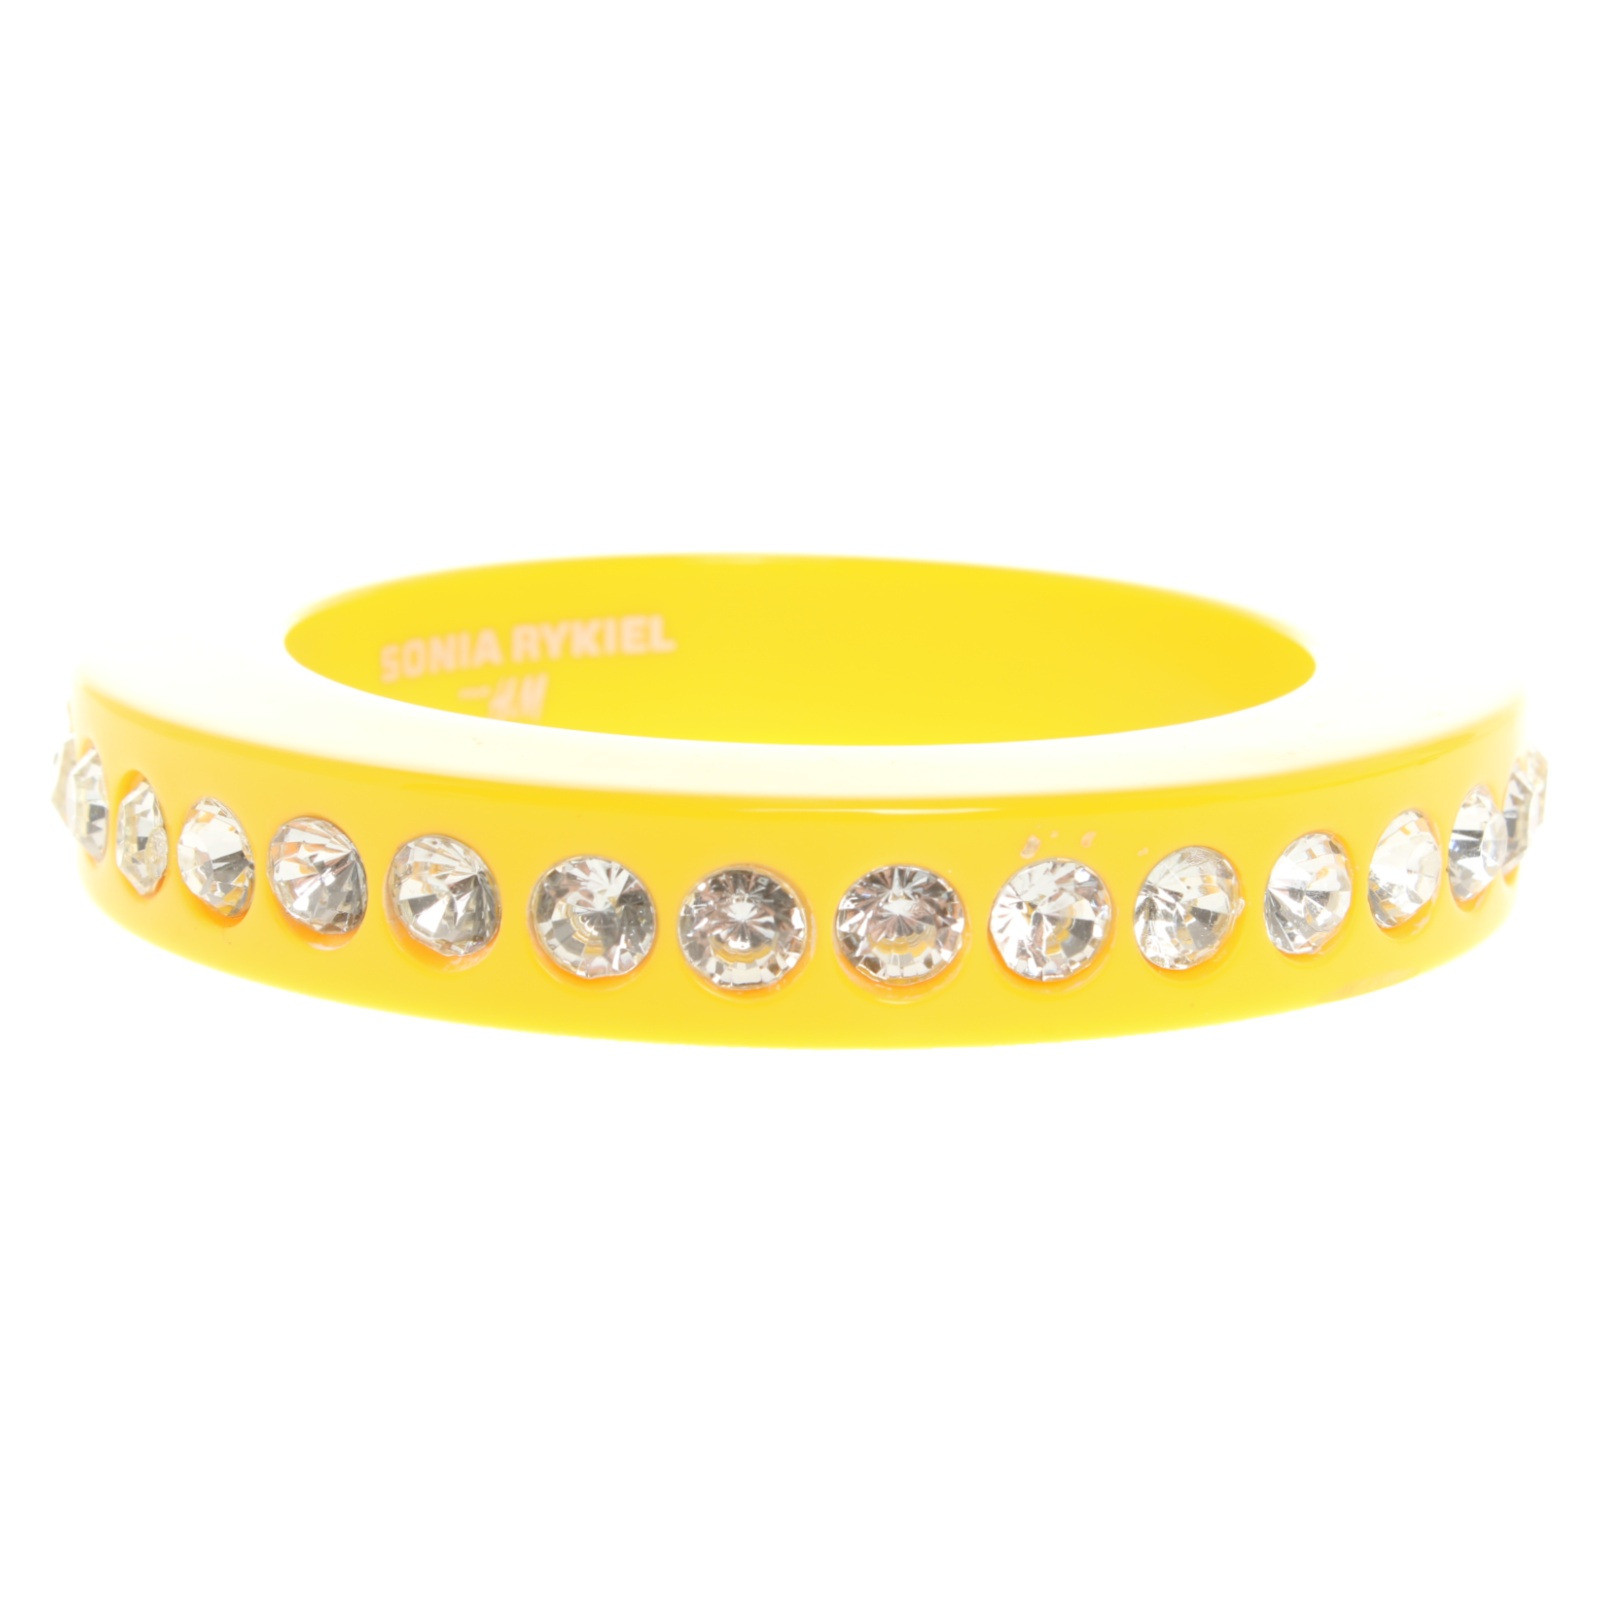 SONIA RYKIEL FOR H&M Damen Armreif/Armband in Gelb | REBELLE